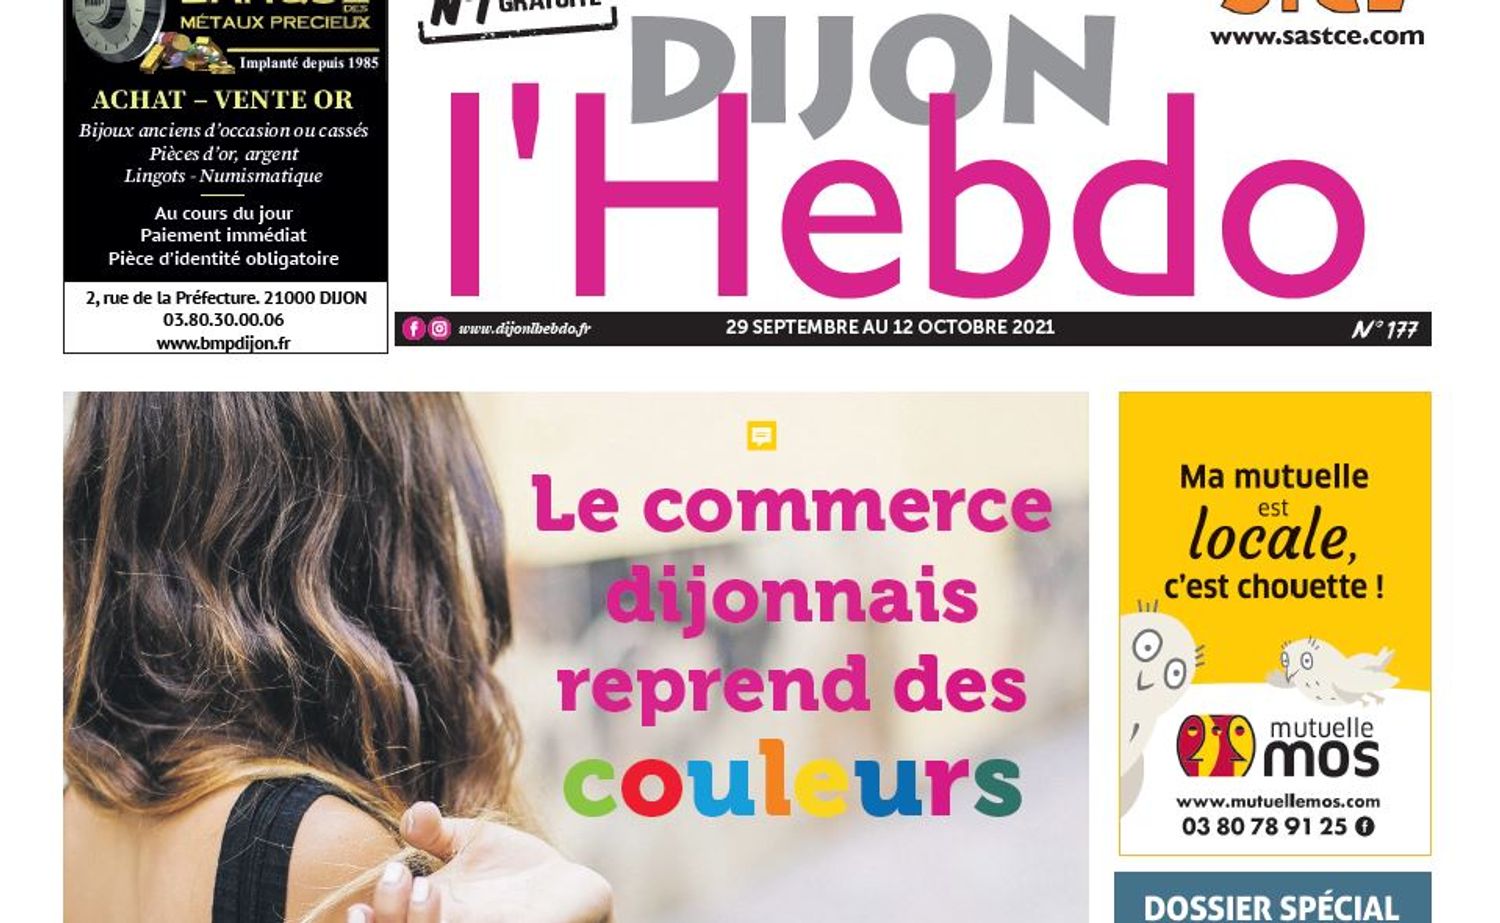 Le nouveau numéro de Dijon l'hebdo est disponible depuis ce mercredi 